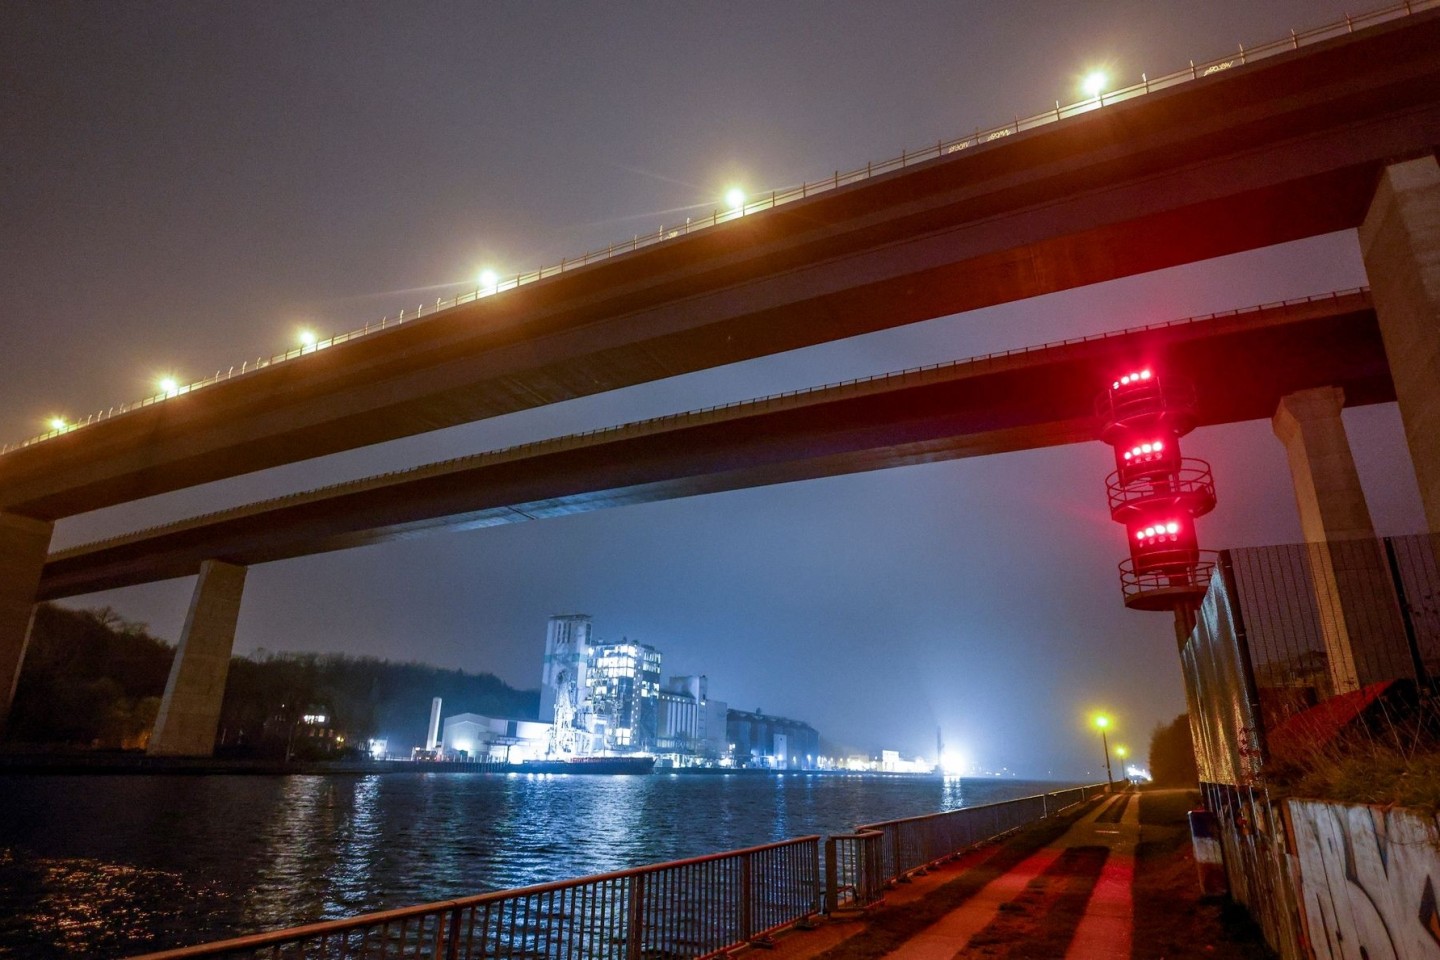 Mit roten Lichtzeichen ist die Hochbrücke in Kiel-Holtenau gesperrt. Ein Schiff war mit der Brücke kollidiert, woraufhin diese für den Schiffs- und Autoverkehr geperrt wurde.